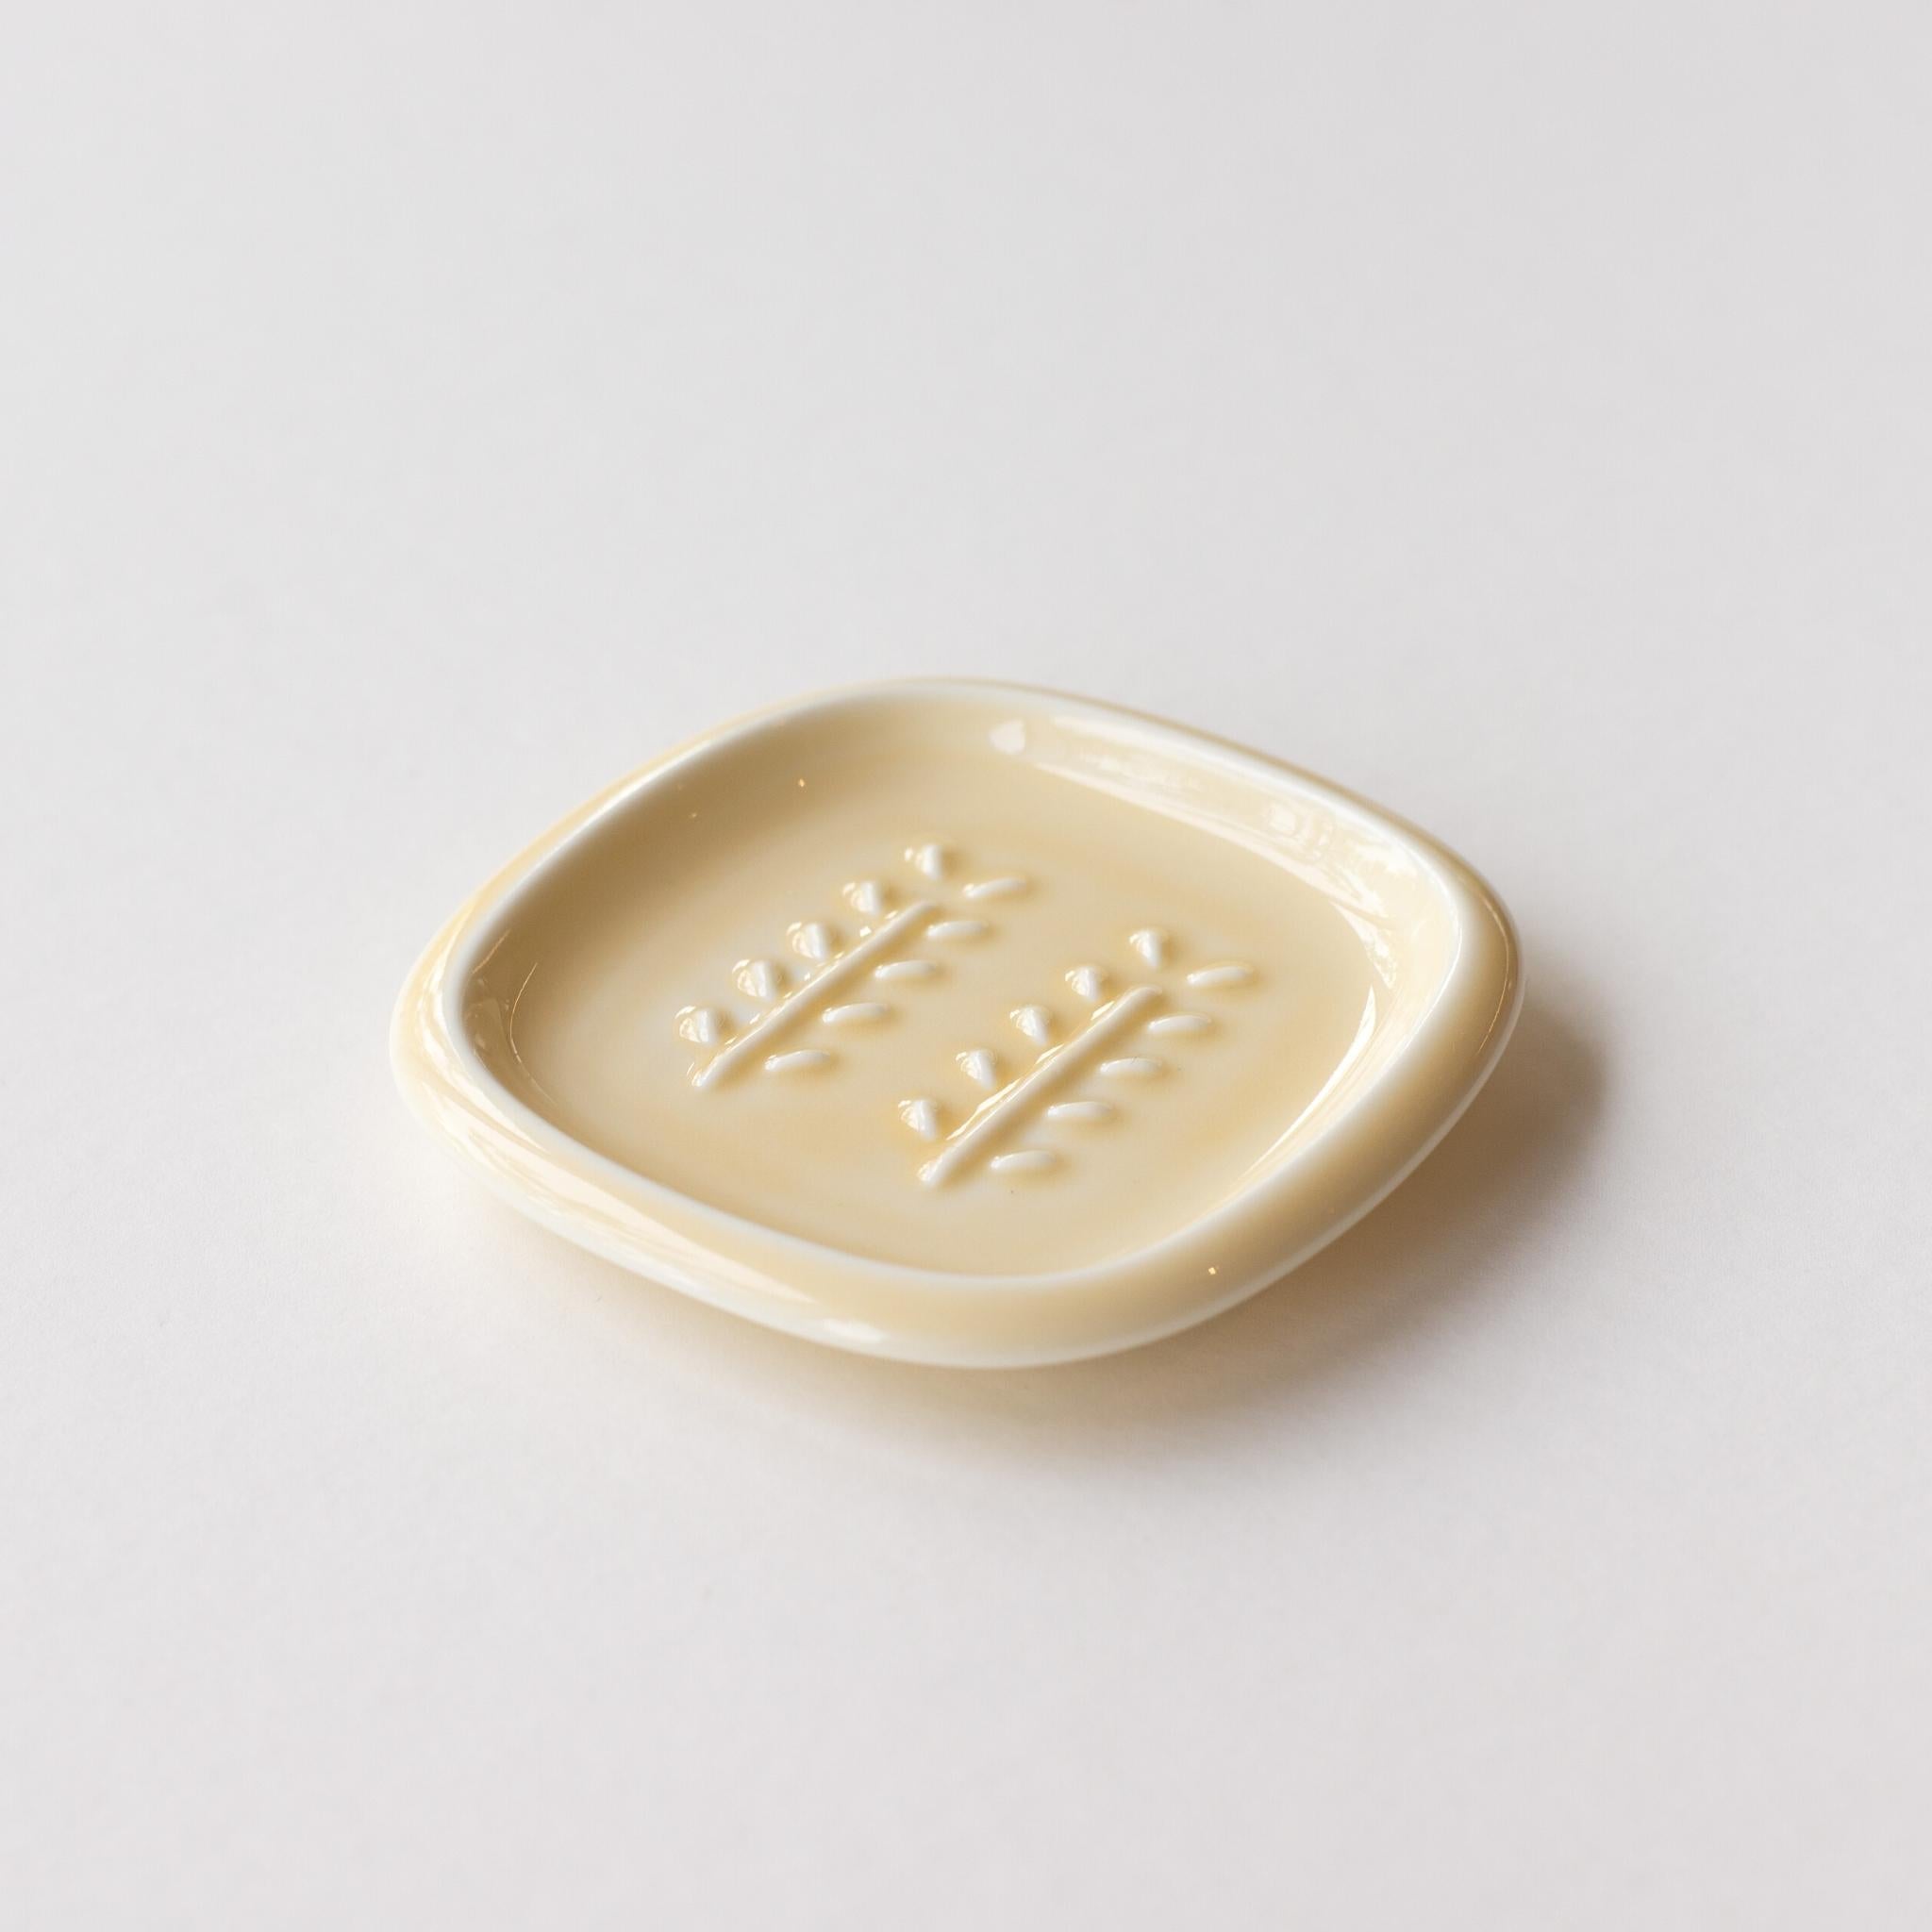 日本深山miyama小葉瓷皂盤(方型/鵝黃/日本製)